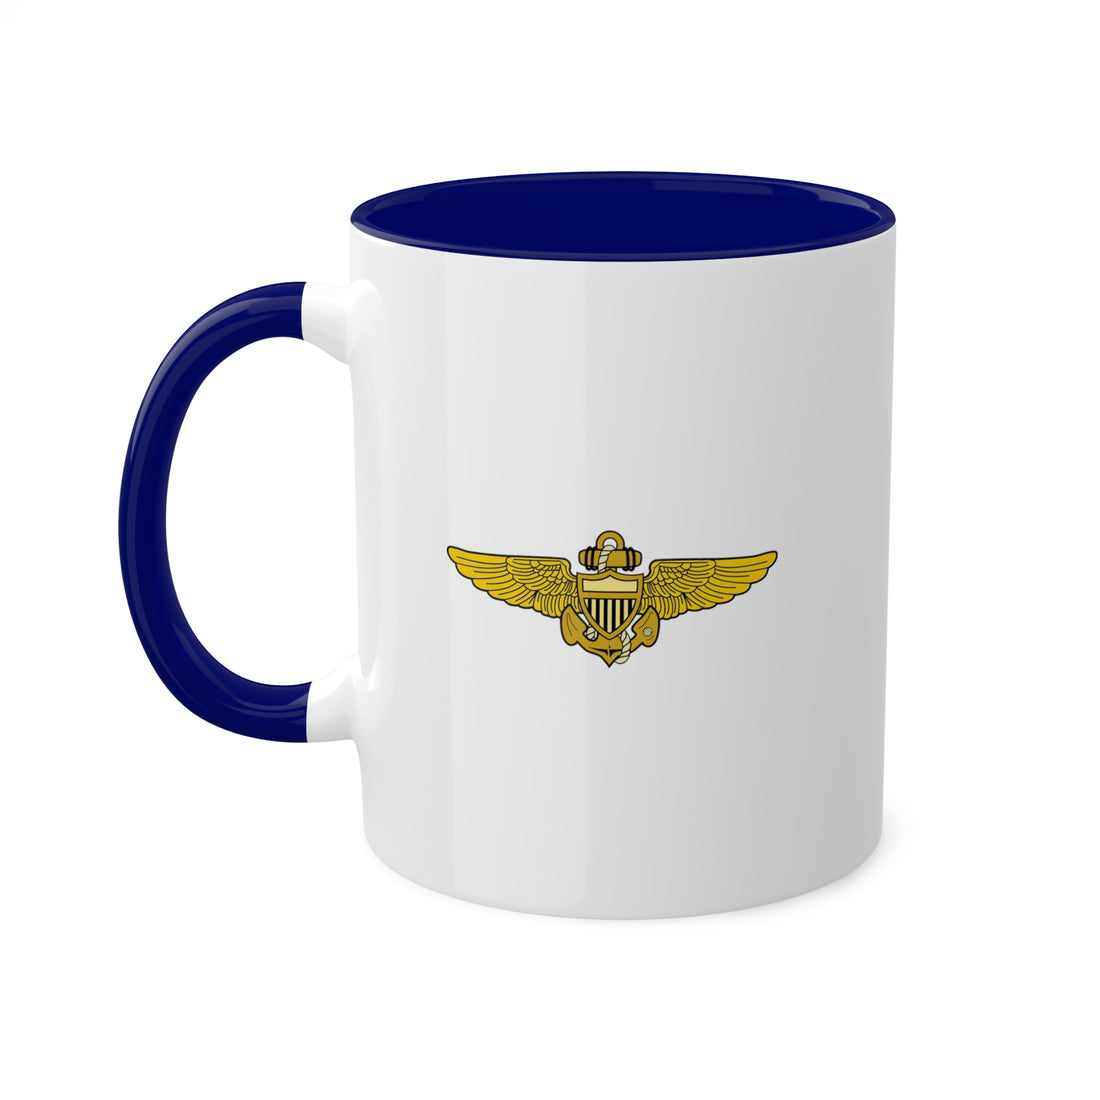 VT-7 "Eagles" Naval Aviator Wings 10oz. Coffee Mug, Navy Training Squadron flying the T-45 Goshawk